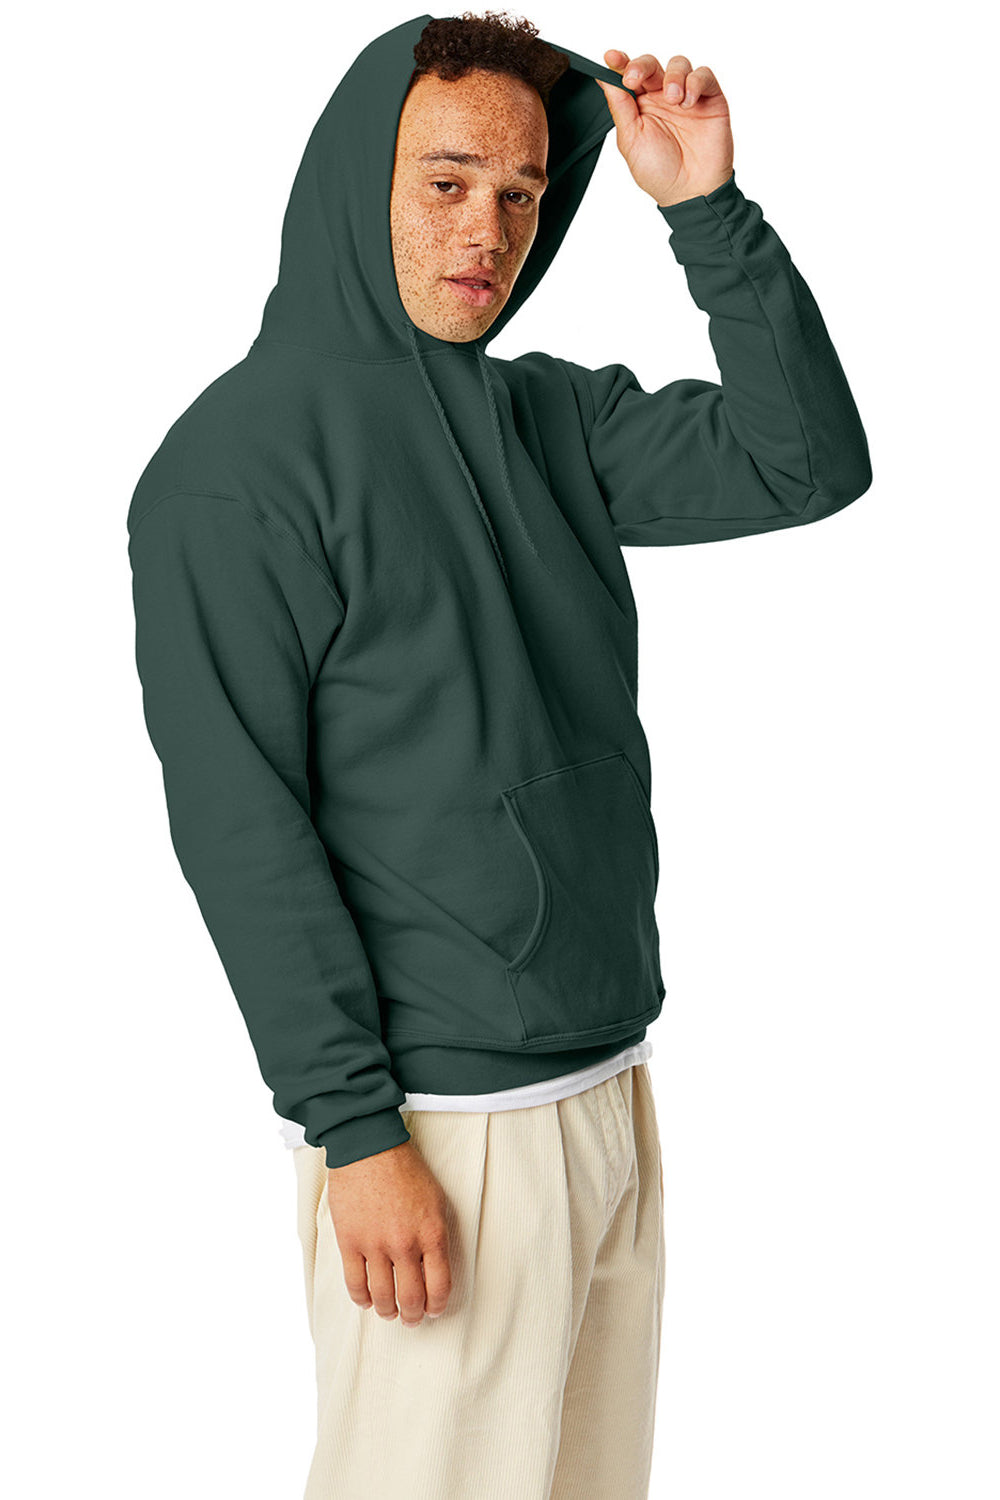 Hanes P170 Mens EcoSmart Print Pro XP Hooded Sweatshirt Hoodie Athletic Dark Green SIde